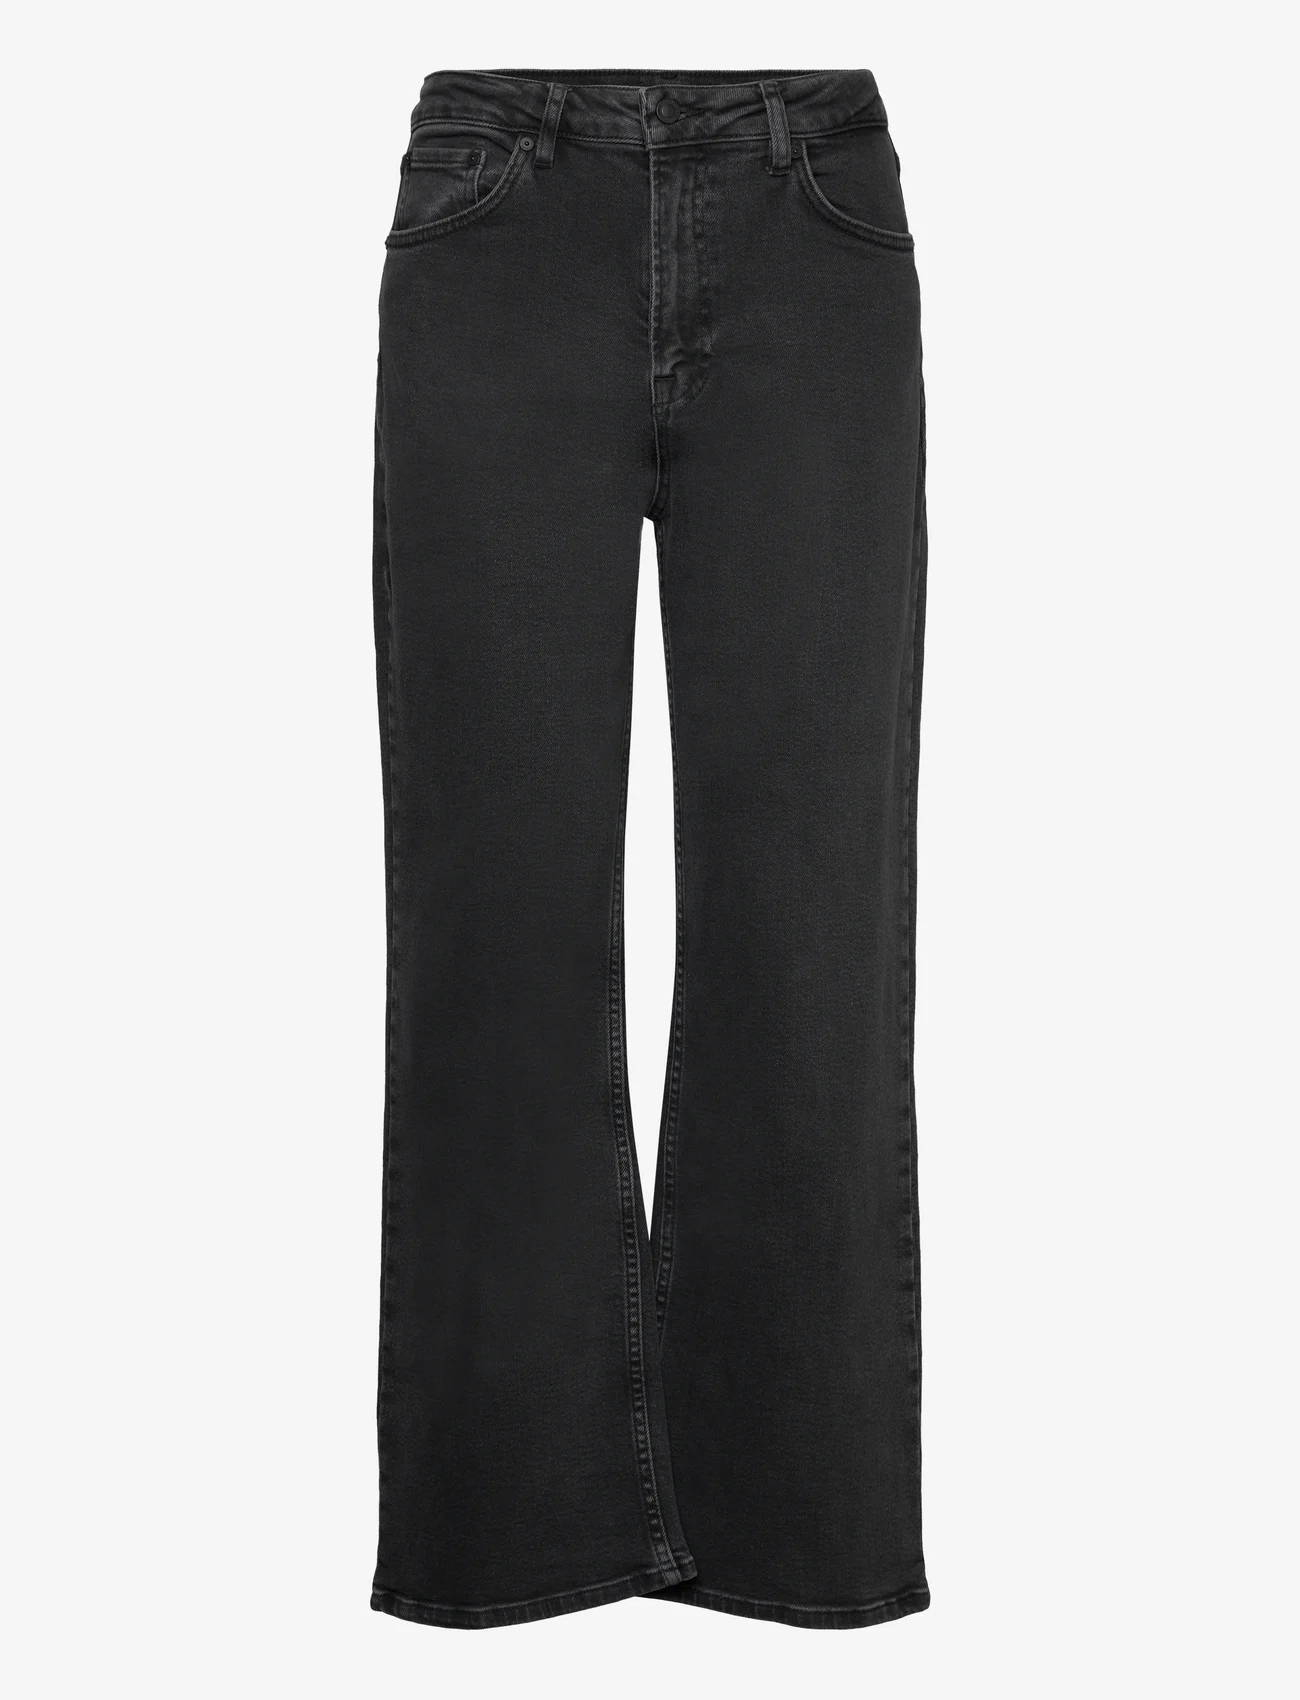 IVY Copenhagen - IVY-Brooke Jeans Wash Original Blac - platūs džinsai - black - 0